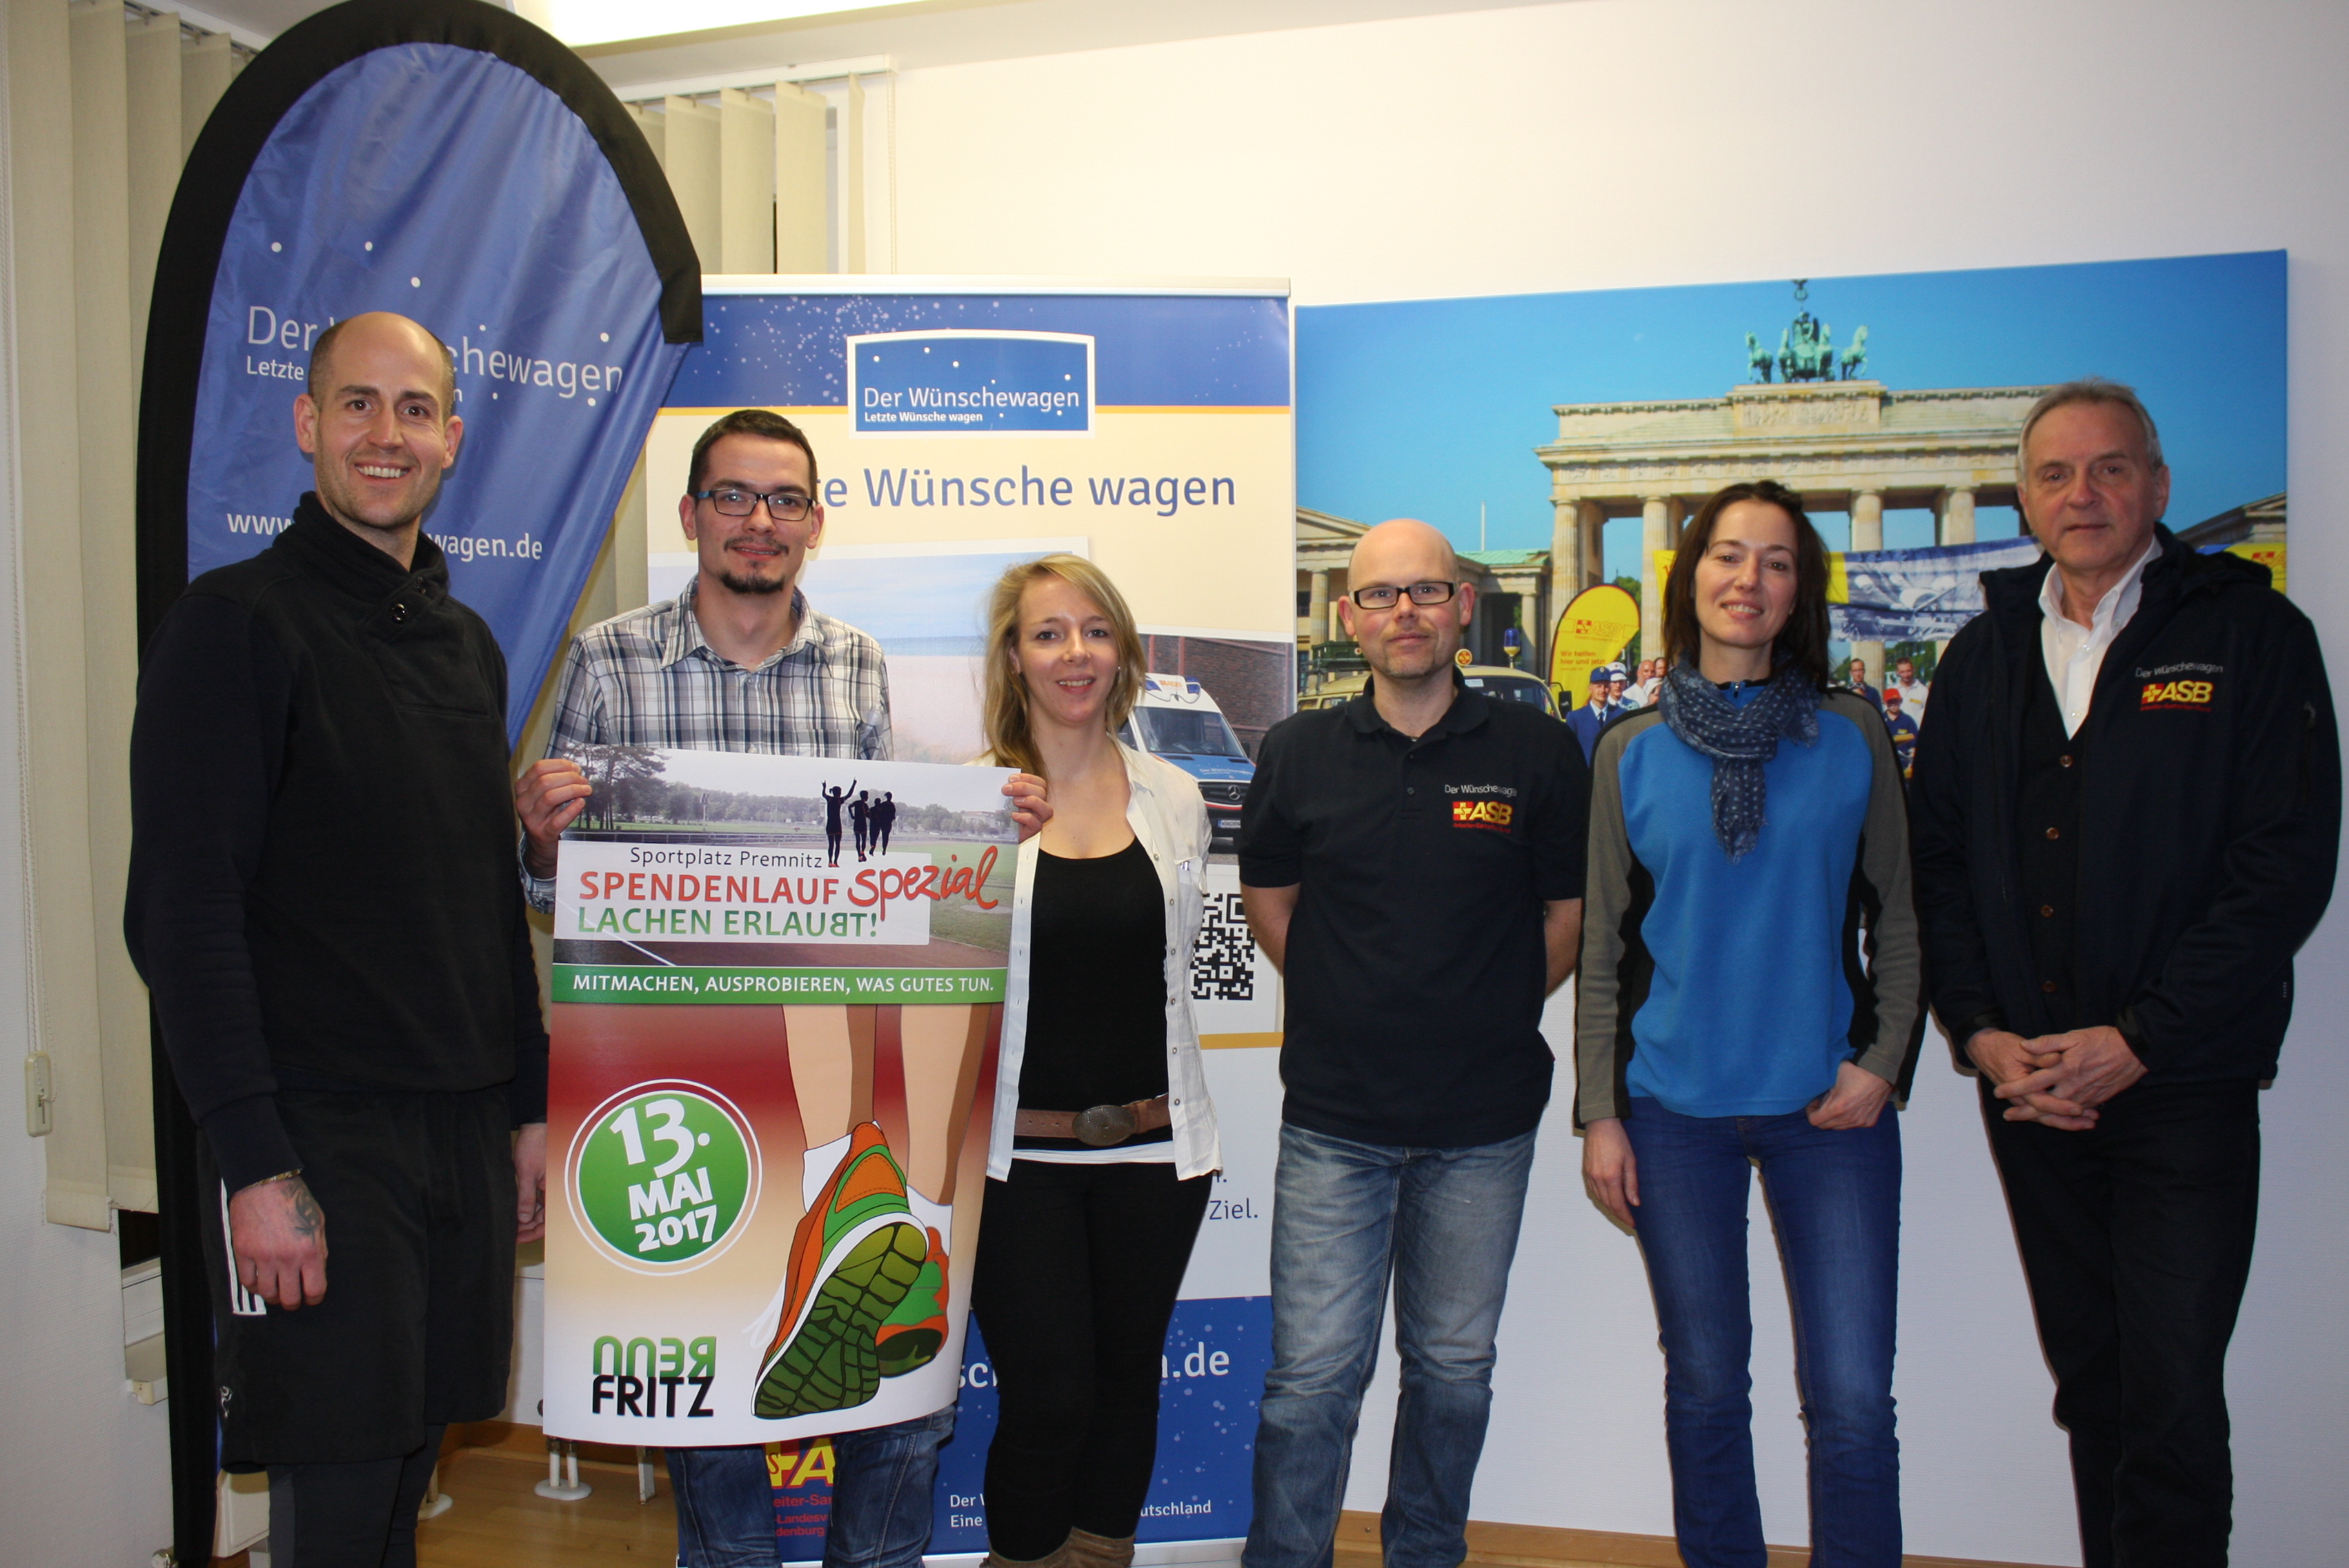 Das Foto zeigt die Organisatoren des diesjährigen Rennfritz-Spendenlauf.